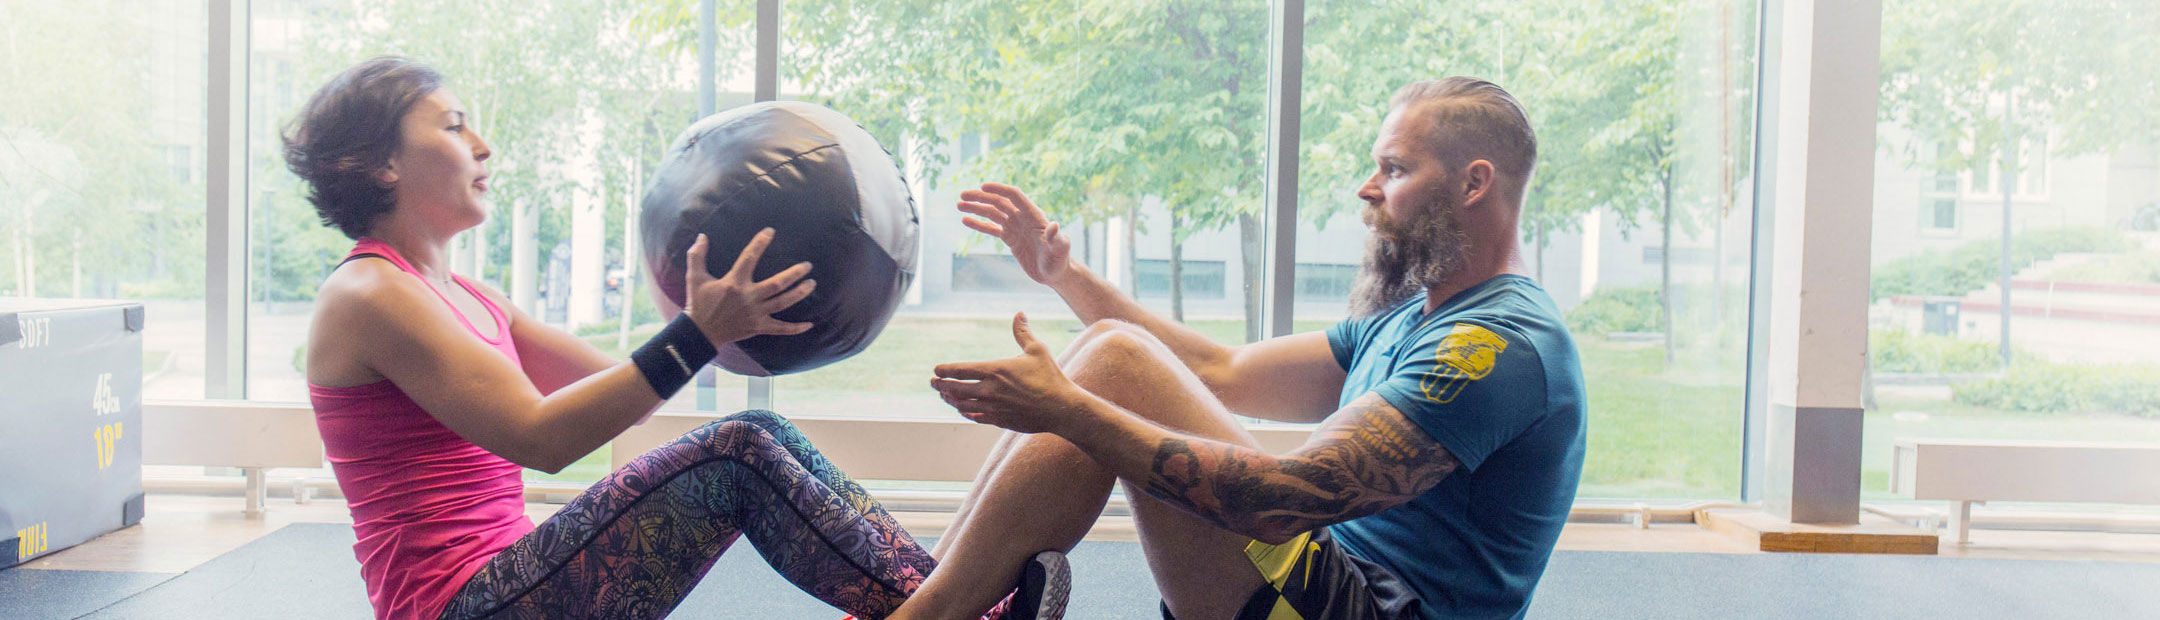 Två personer klädda i färglada träningskläder som sitter på golvet mot varandra och gör pushups med en tyngsboll